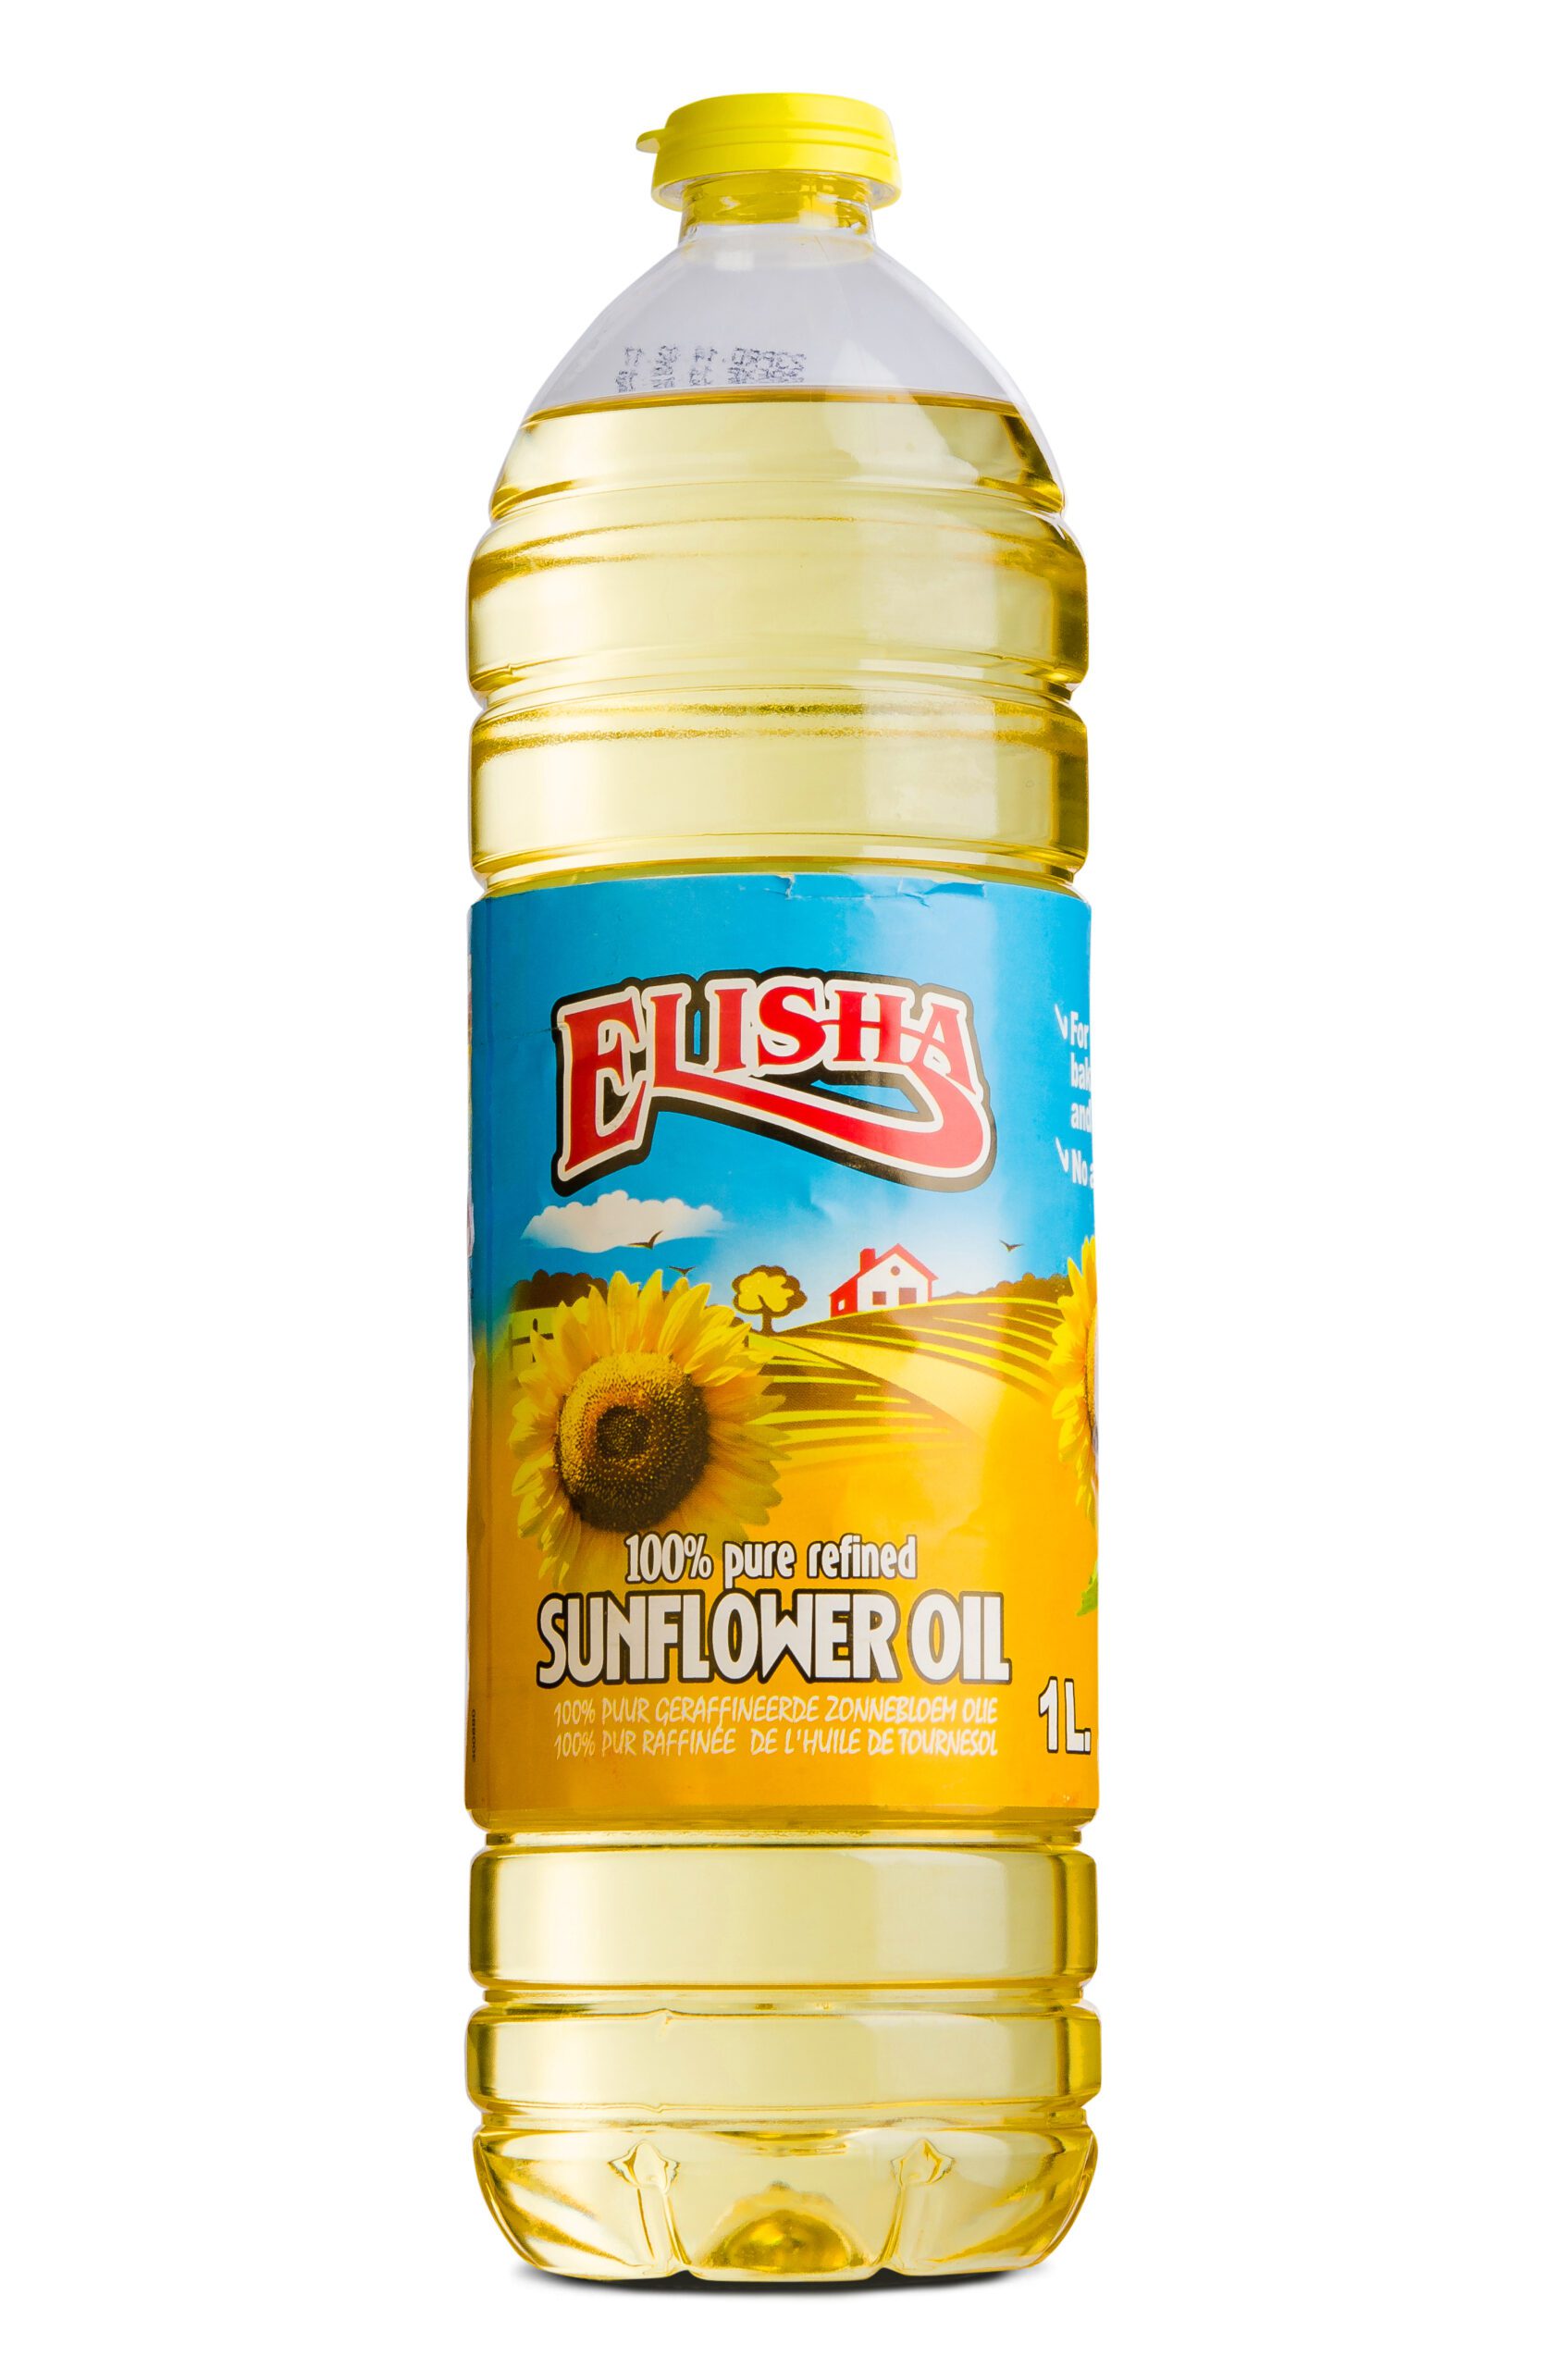 ELISHA SUNFLOWER OIL